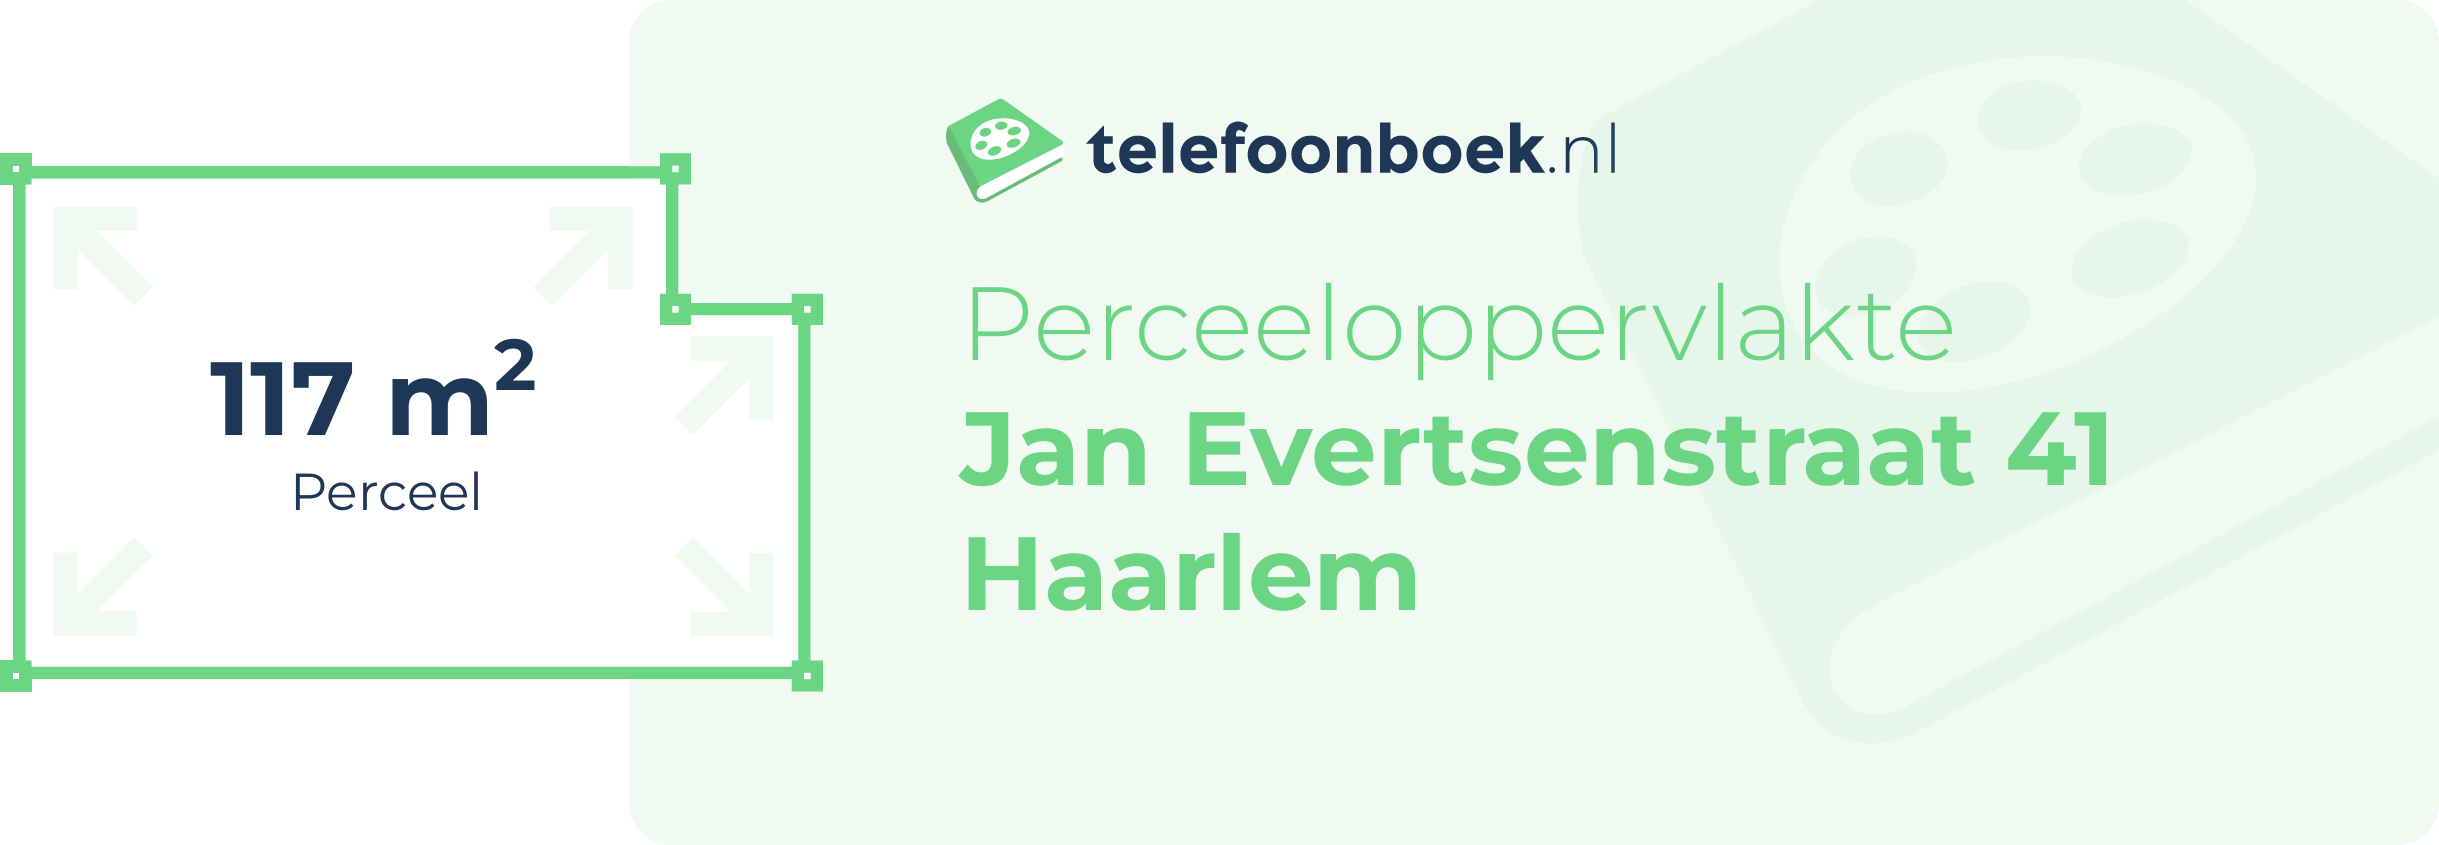 Perceeloppervlakte Jan Evertsenstraat 41 Haarlem